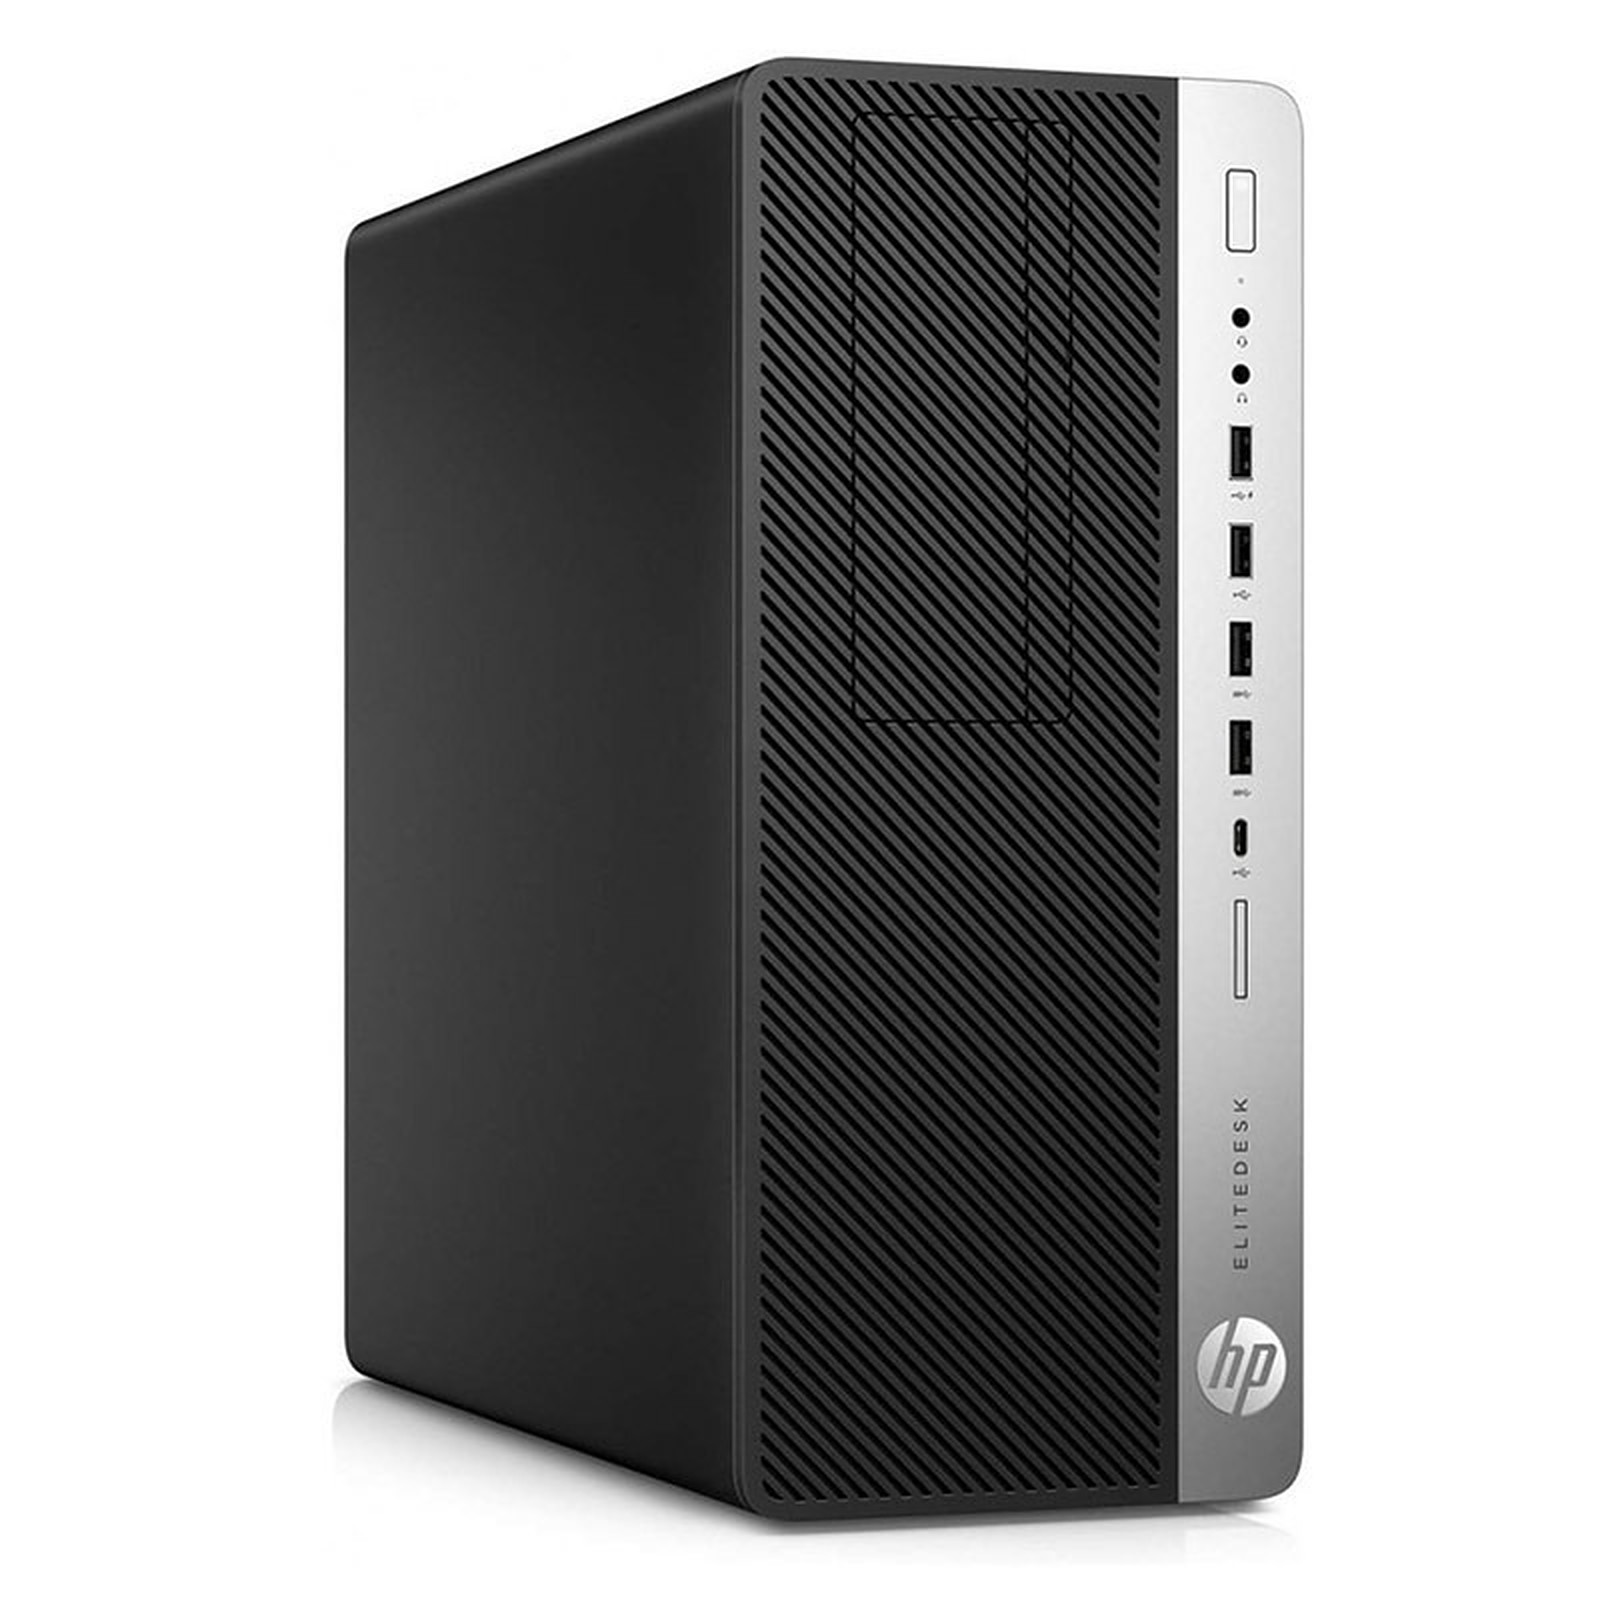 HP LPG-800G3 (I5651674S) · Reconditionne - PC de bureau reconditionne HP